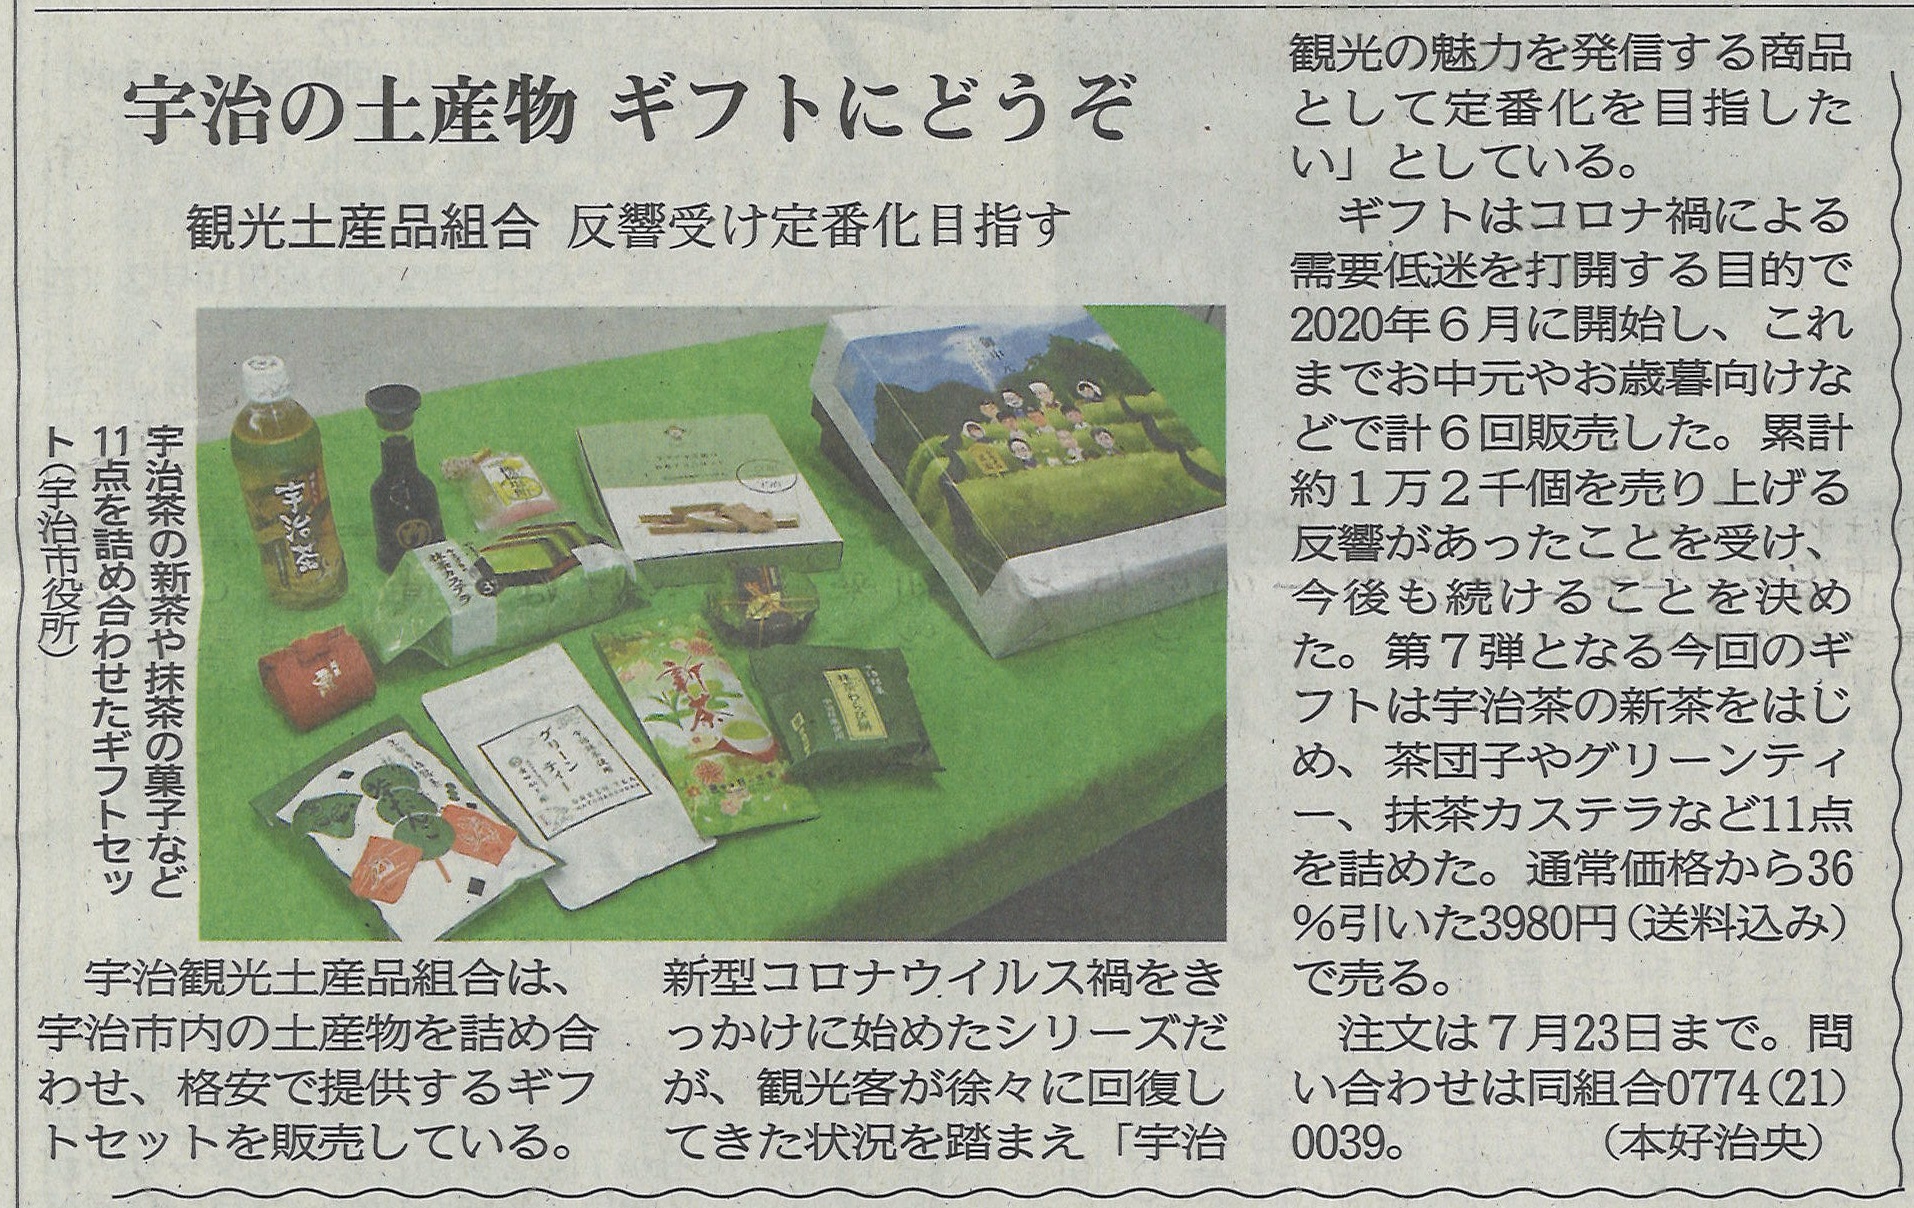 6月28日 京都新聞にて宇治観光土産品組合による第7回目のお中元ギフトが紹介